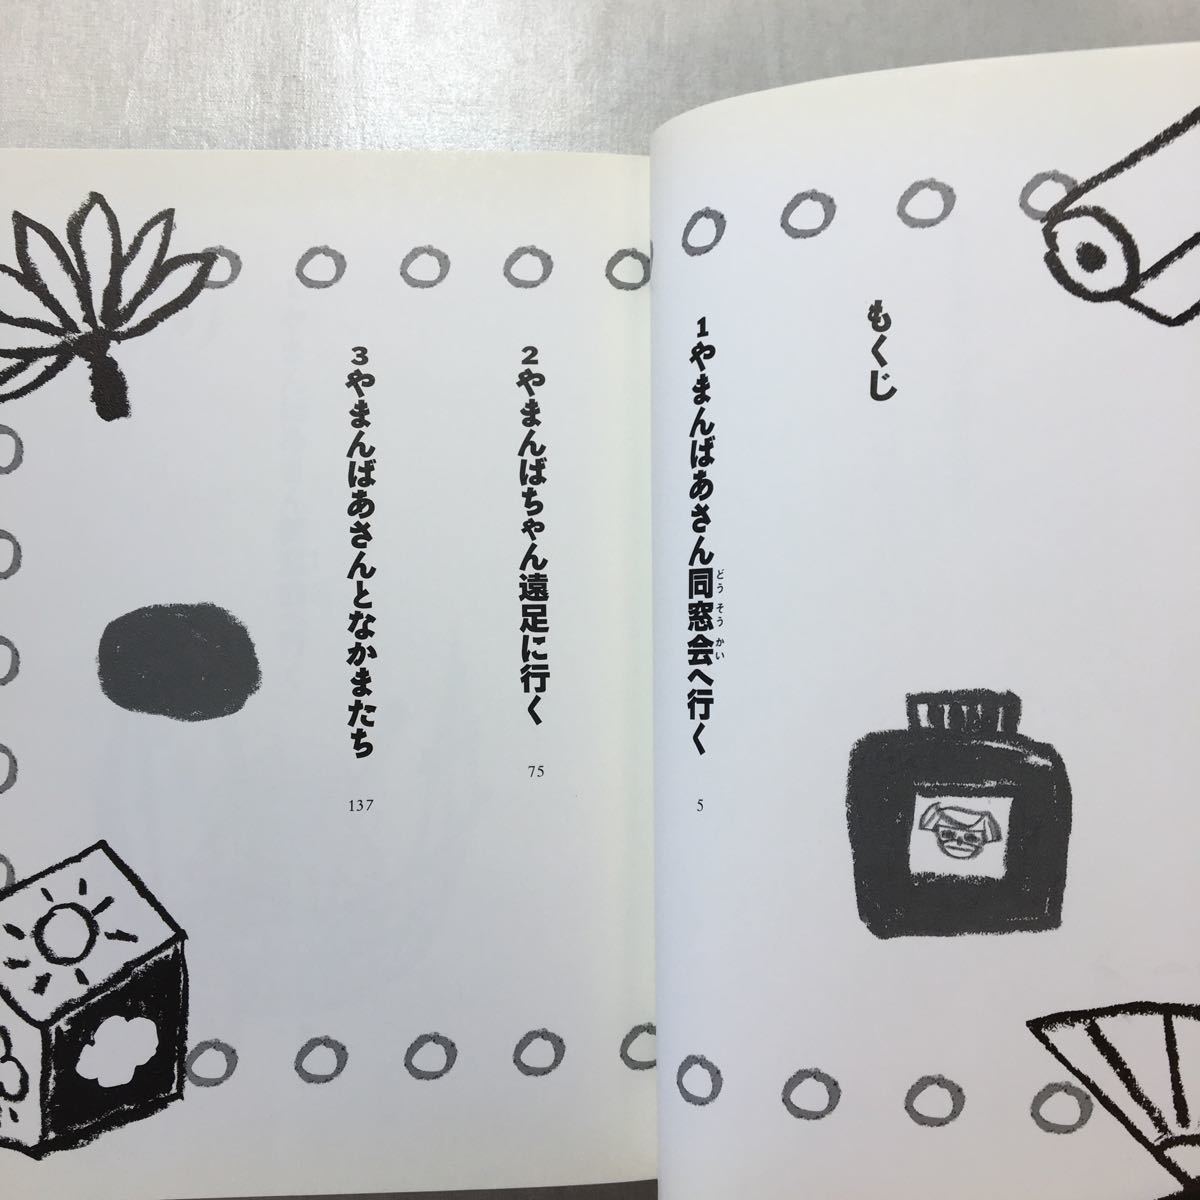 zaa-251♪やまんばあさんとなかまたち 富安 陽子 (著), 大島 妙子 (イラスト)単行本 2008/11/1